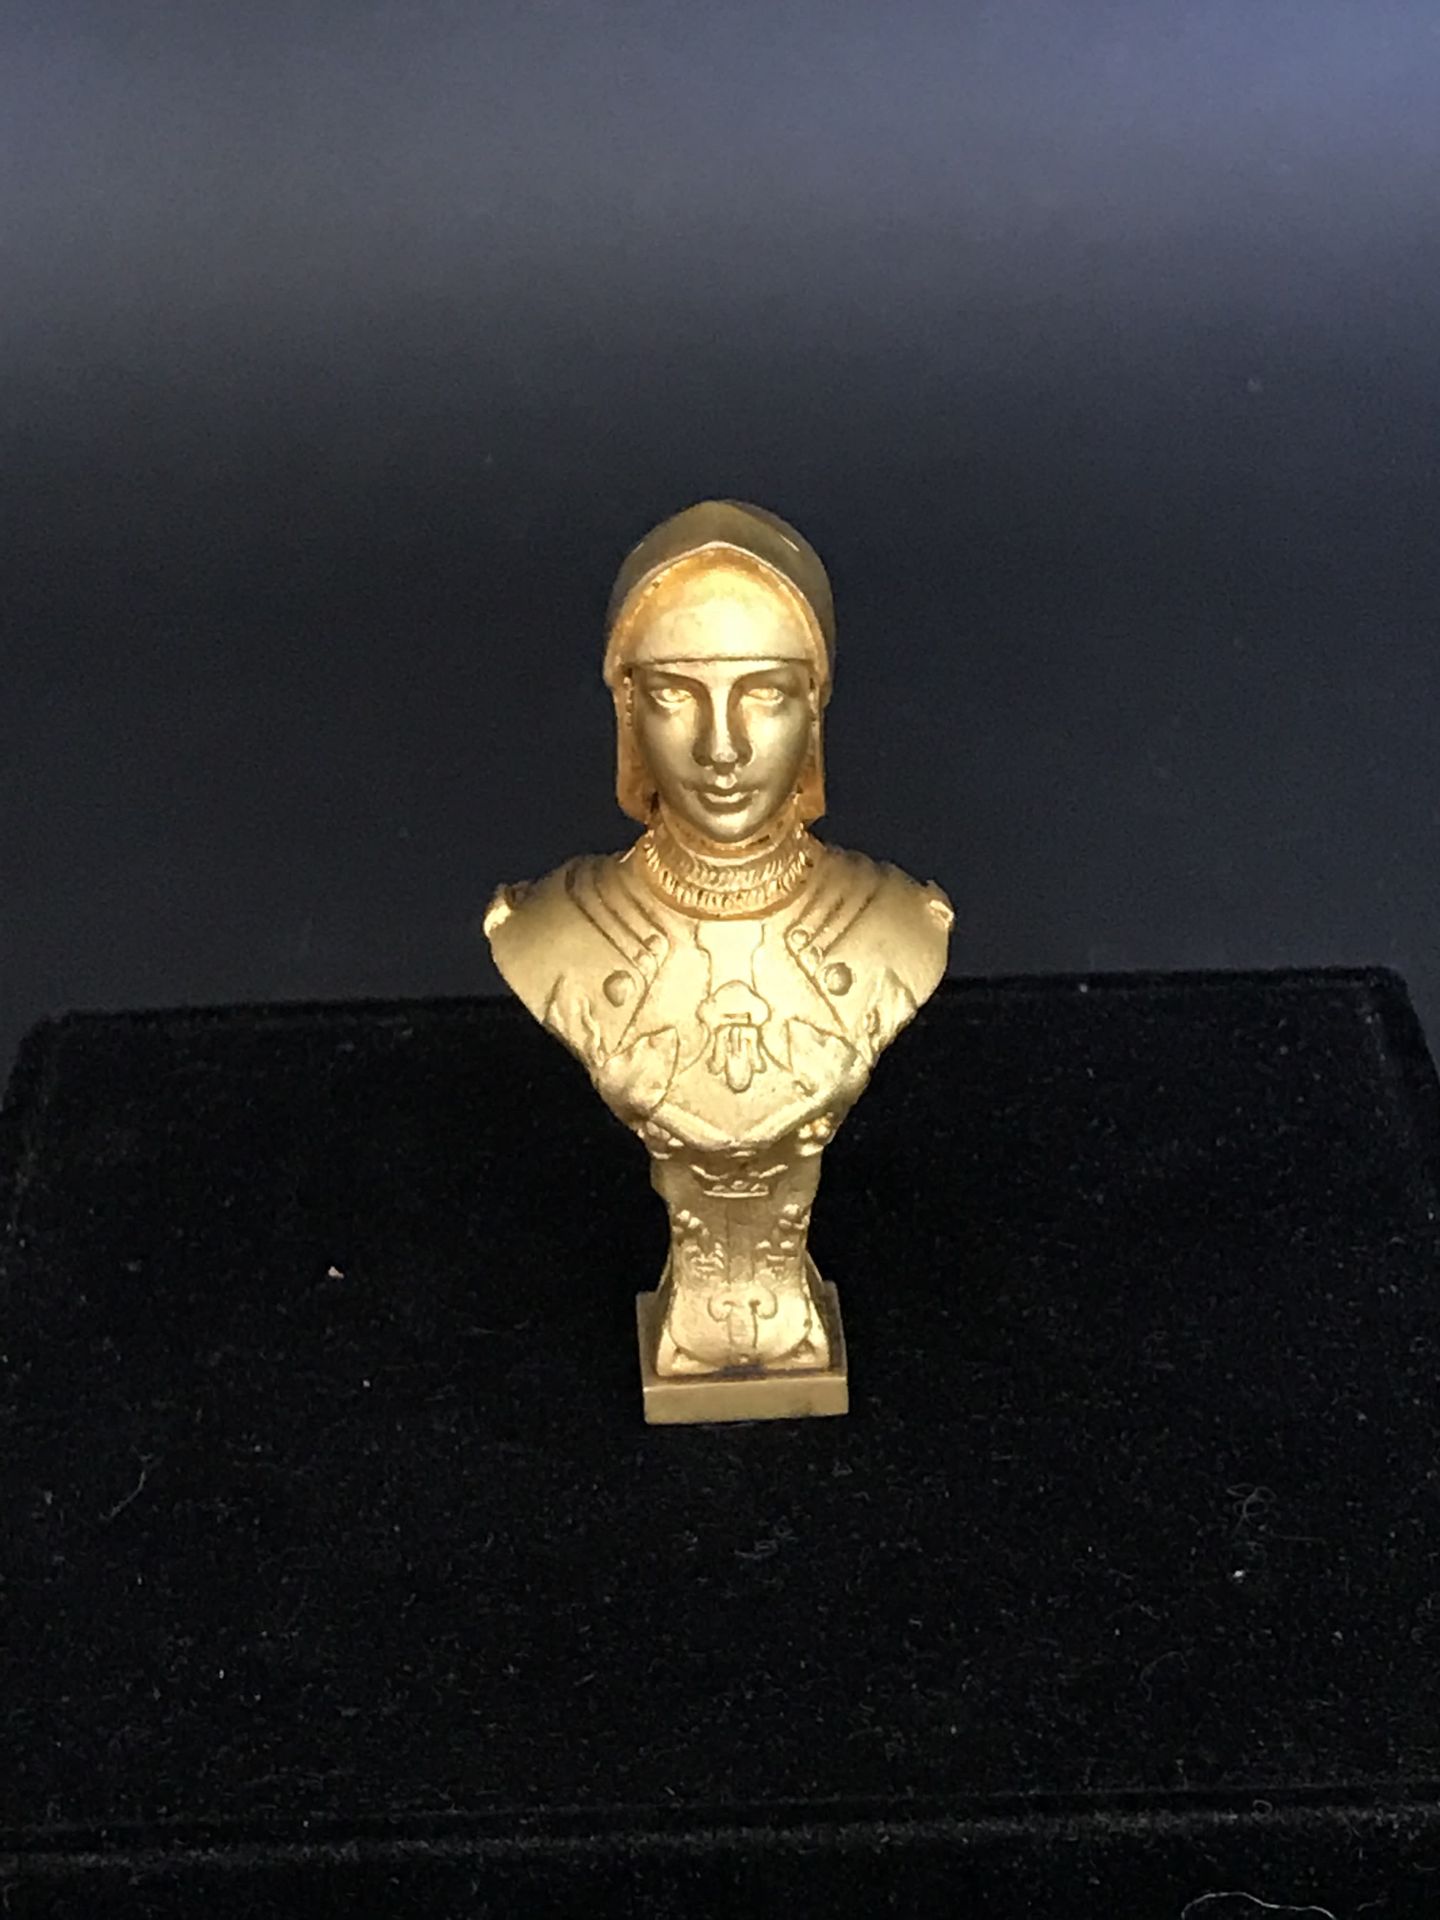 Null STAMP 

in bronzo dorato che rappresenta JEANNE D'ARC 

RM

Circa 1900